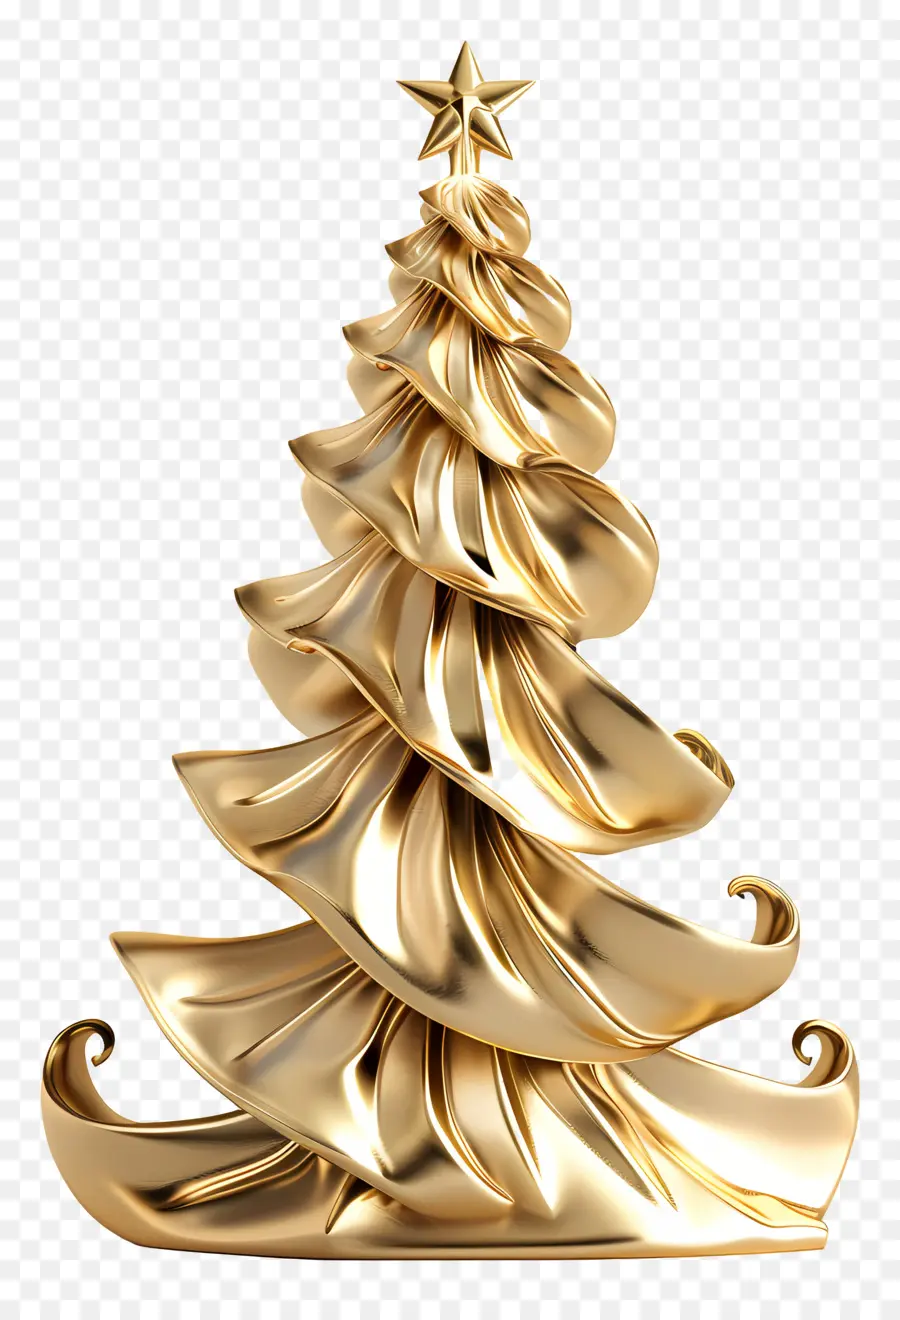 Goldener Weihnachtsbaum - Goldener festlicher Weihnachtsbaum auf schwarzem Hintergrund